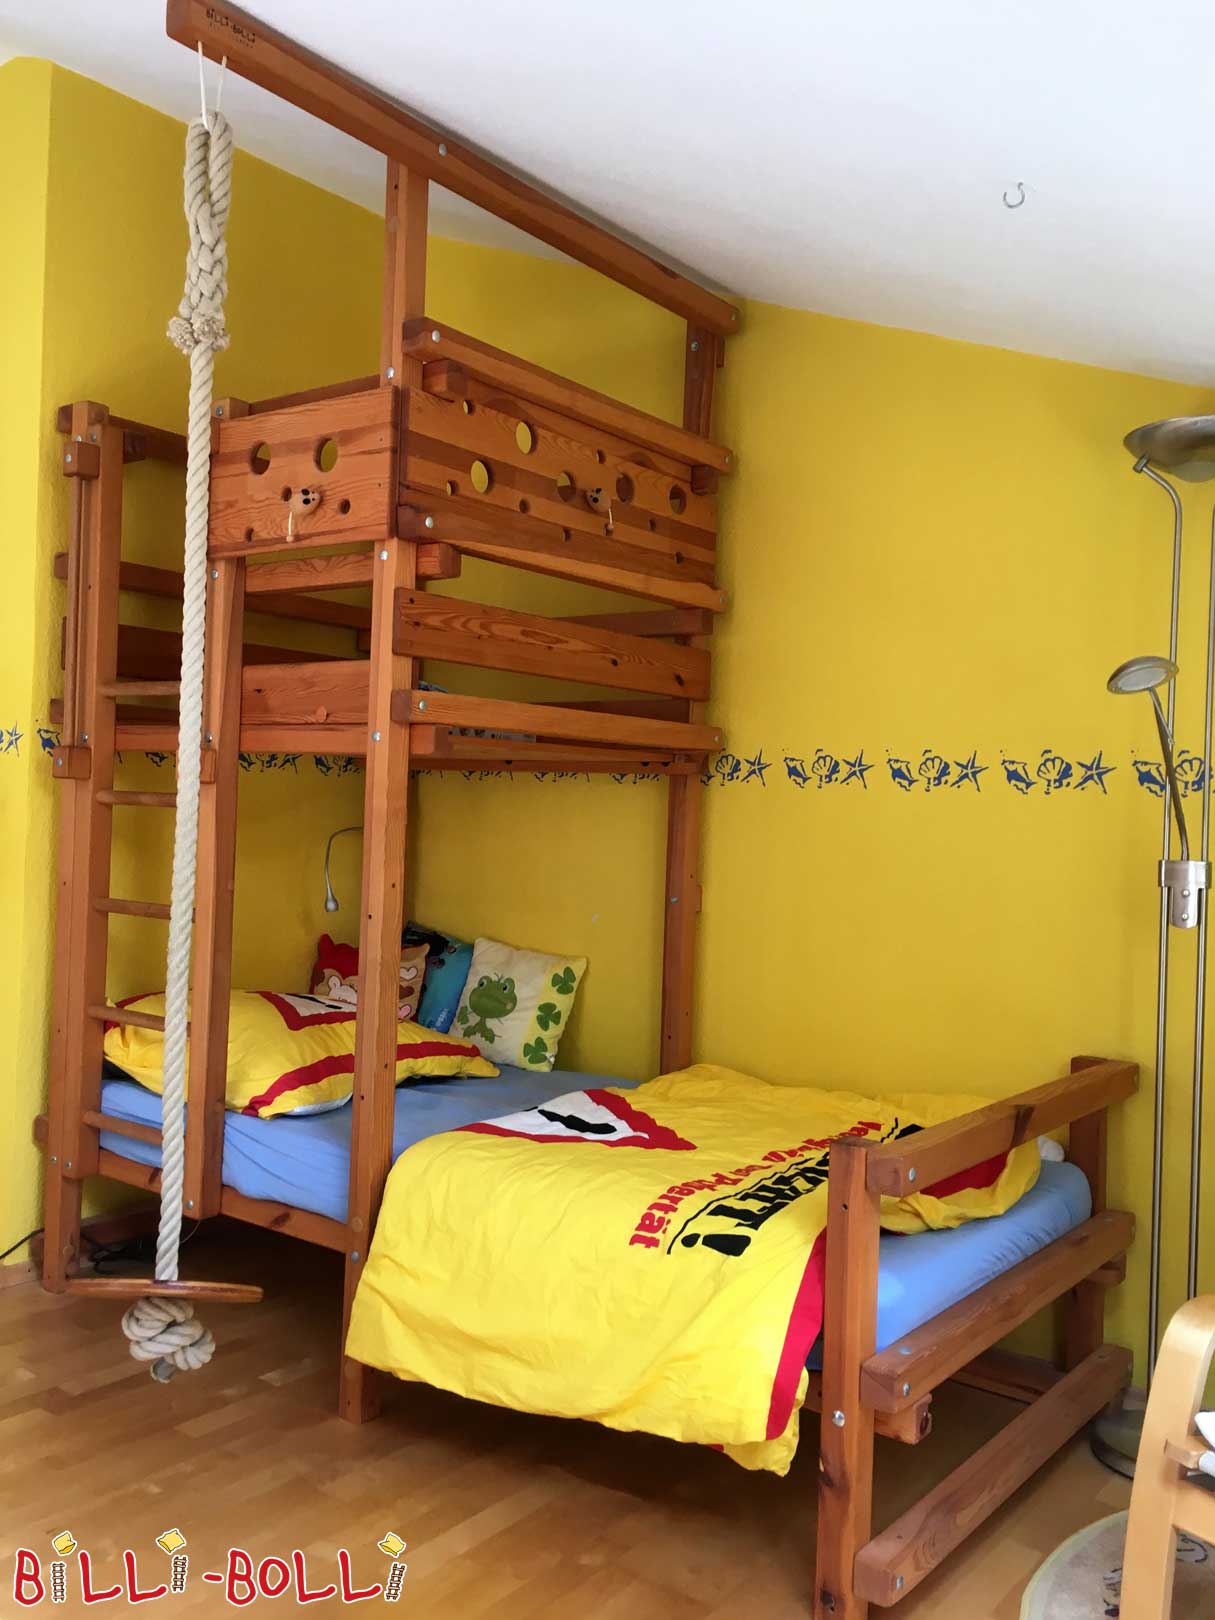 Kosi krovni sloj, 90 x 200 cm, nauljeni bor boje meda (Kategorija: Korišten kosi krovni krevet)